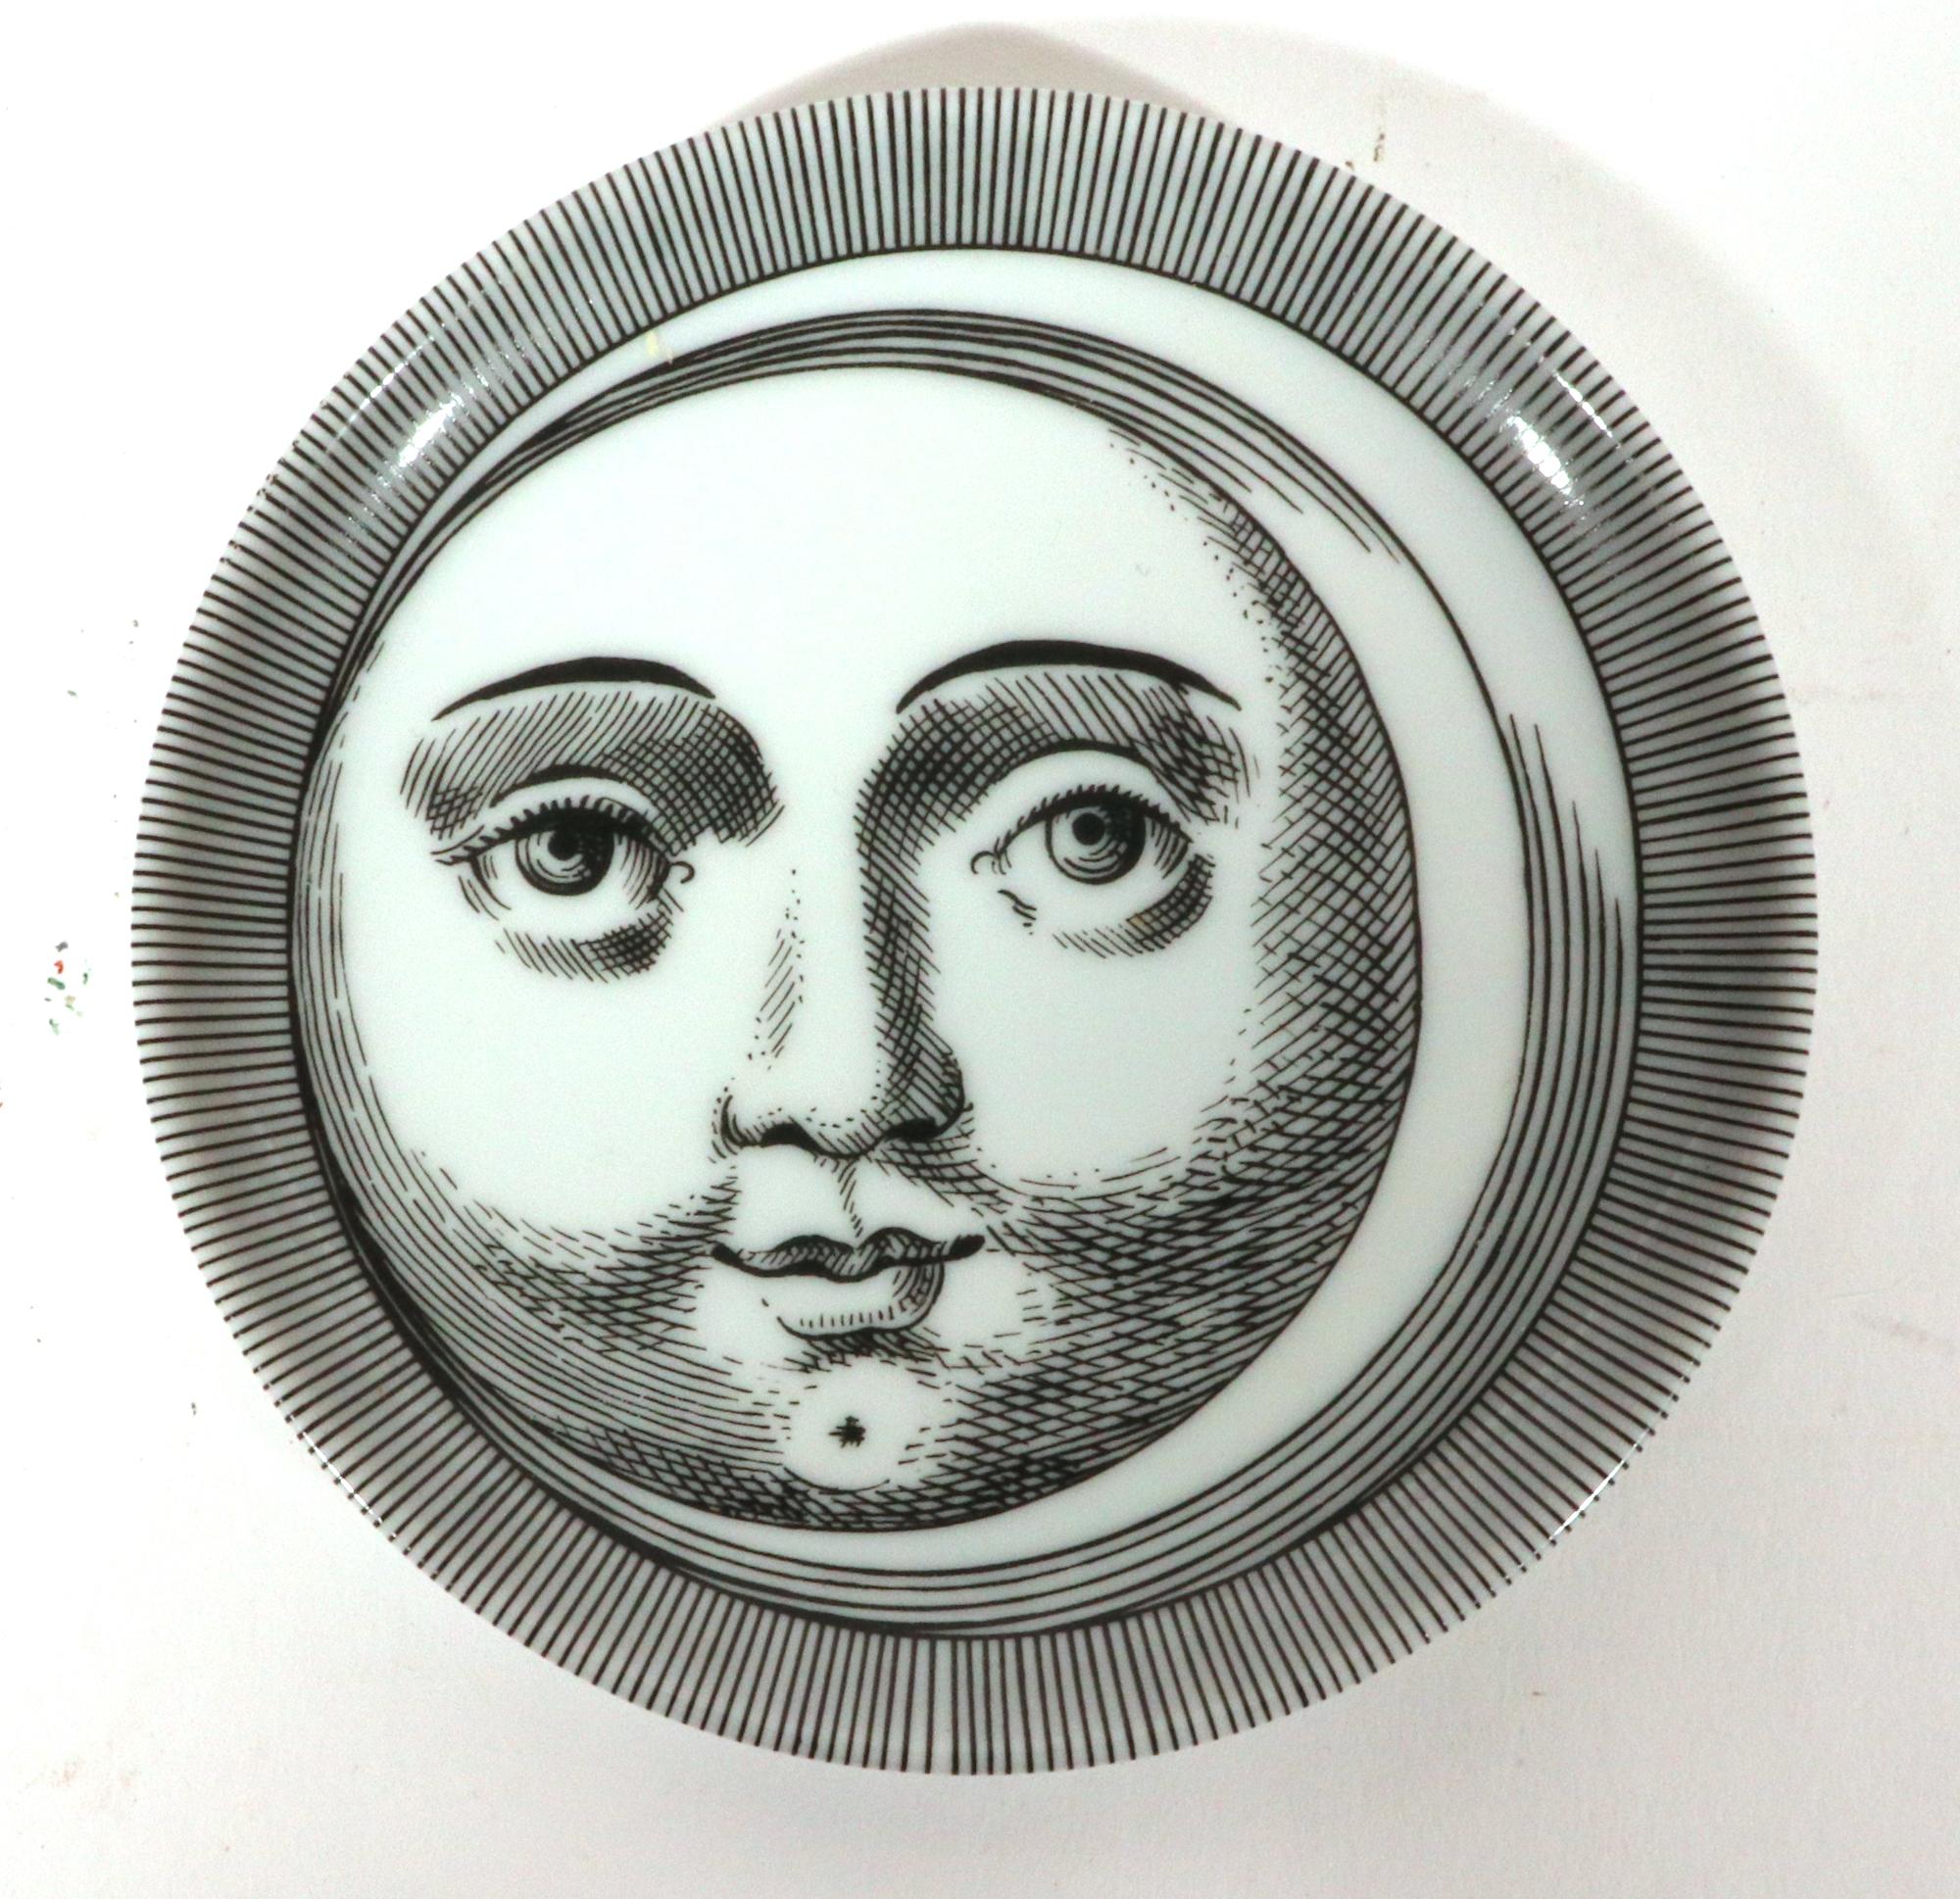 Soli E Lune Sun and Moon Pattern Ceramic Coasters by  Piero Fornasetti For Sale 4